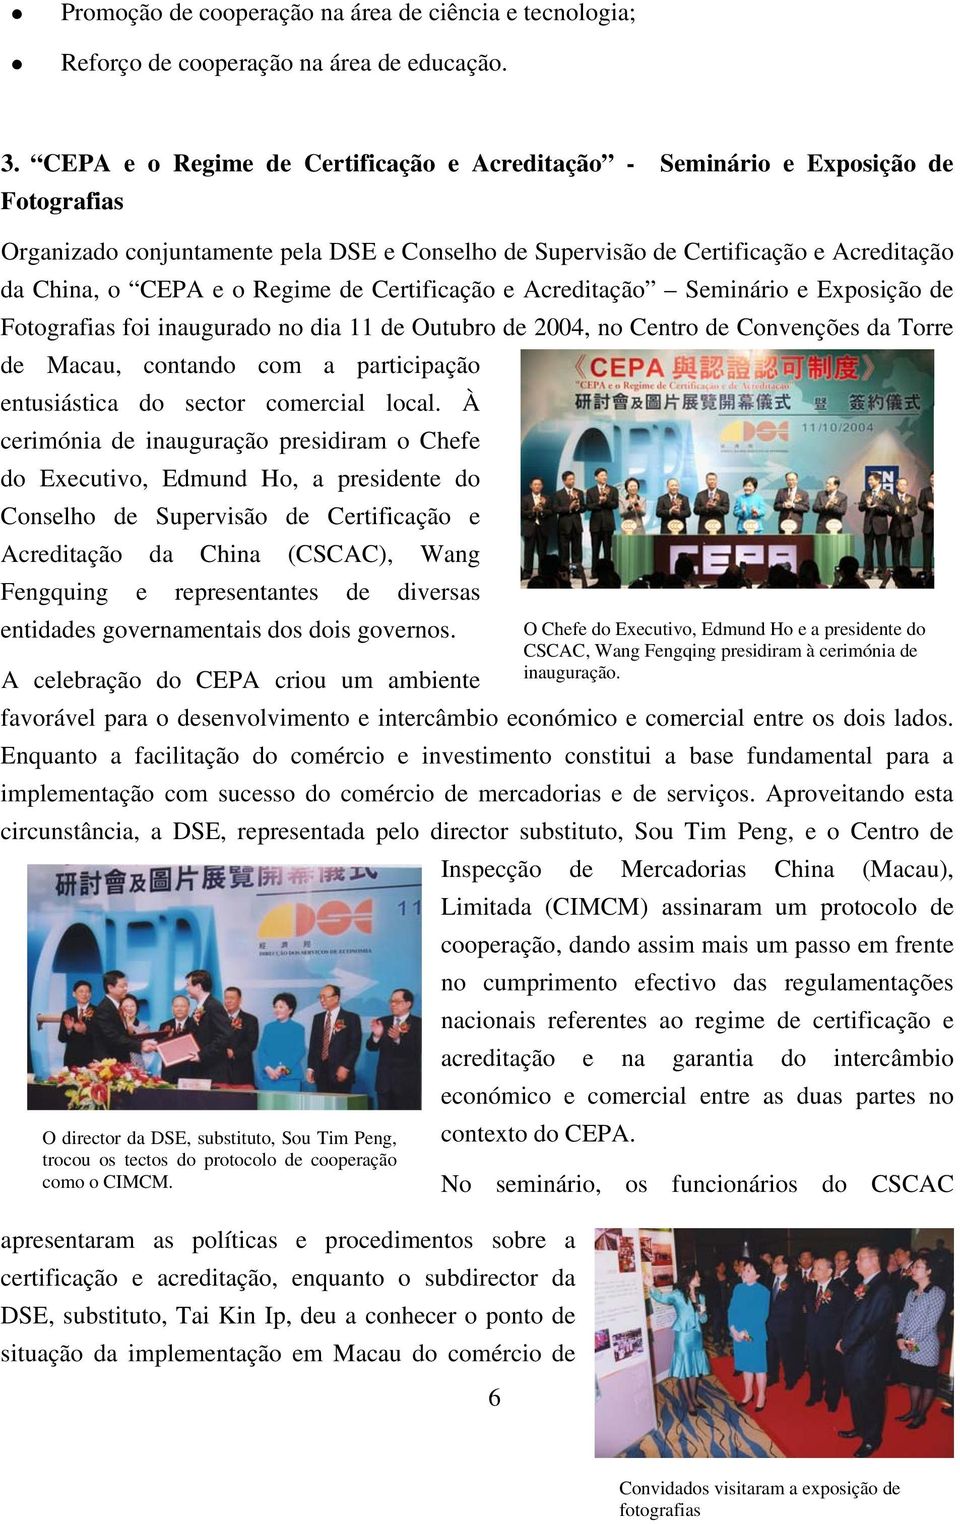 Regime de Certificação e Acreditação Seminário e Exposição de Fotografias foi inaugurado no dia 11 de Outubro de 2004, no Centro de Convenções da Torre de Macau, contando com a participação